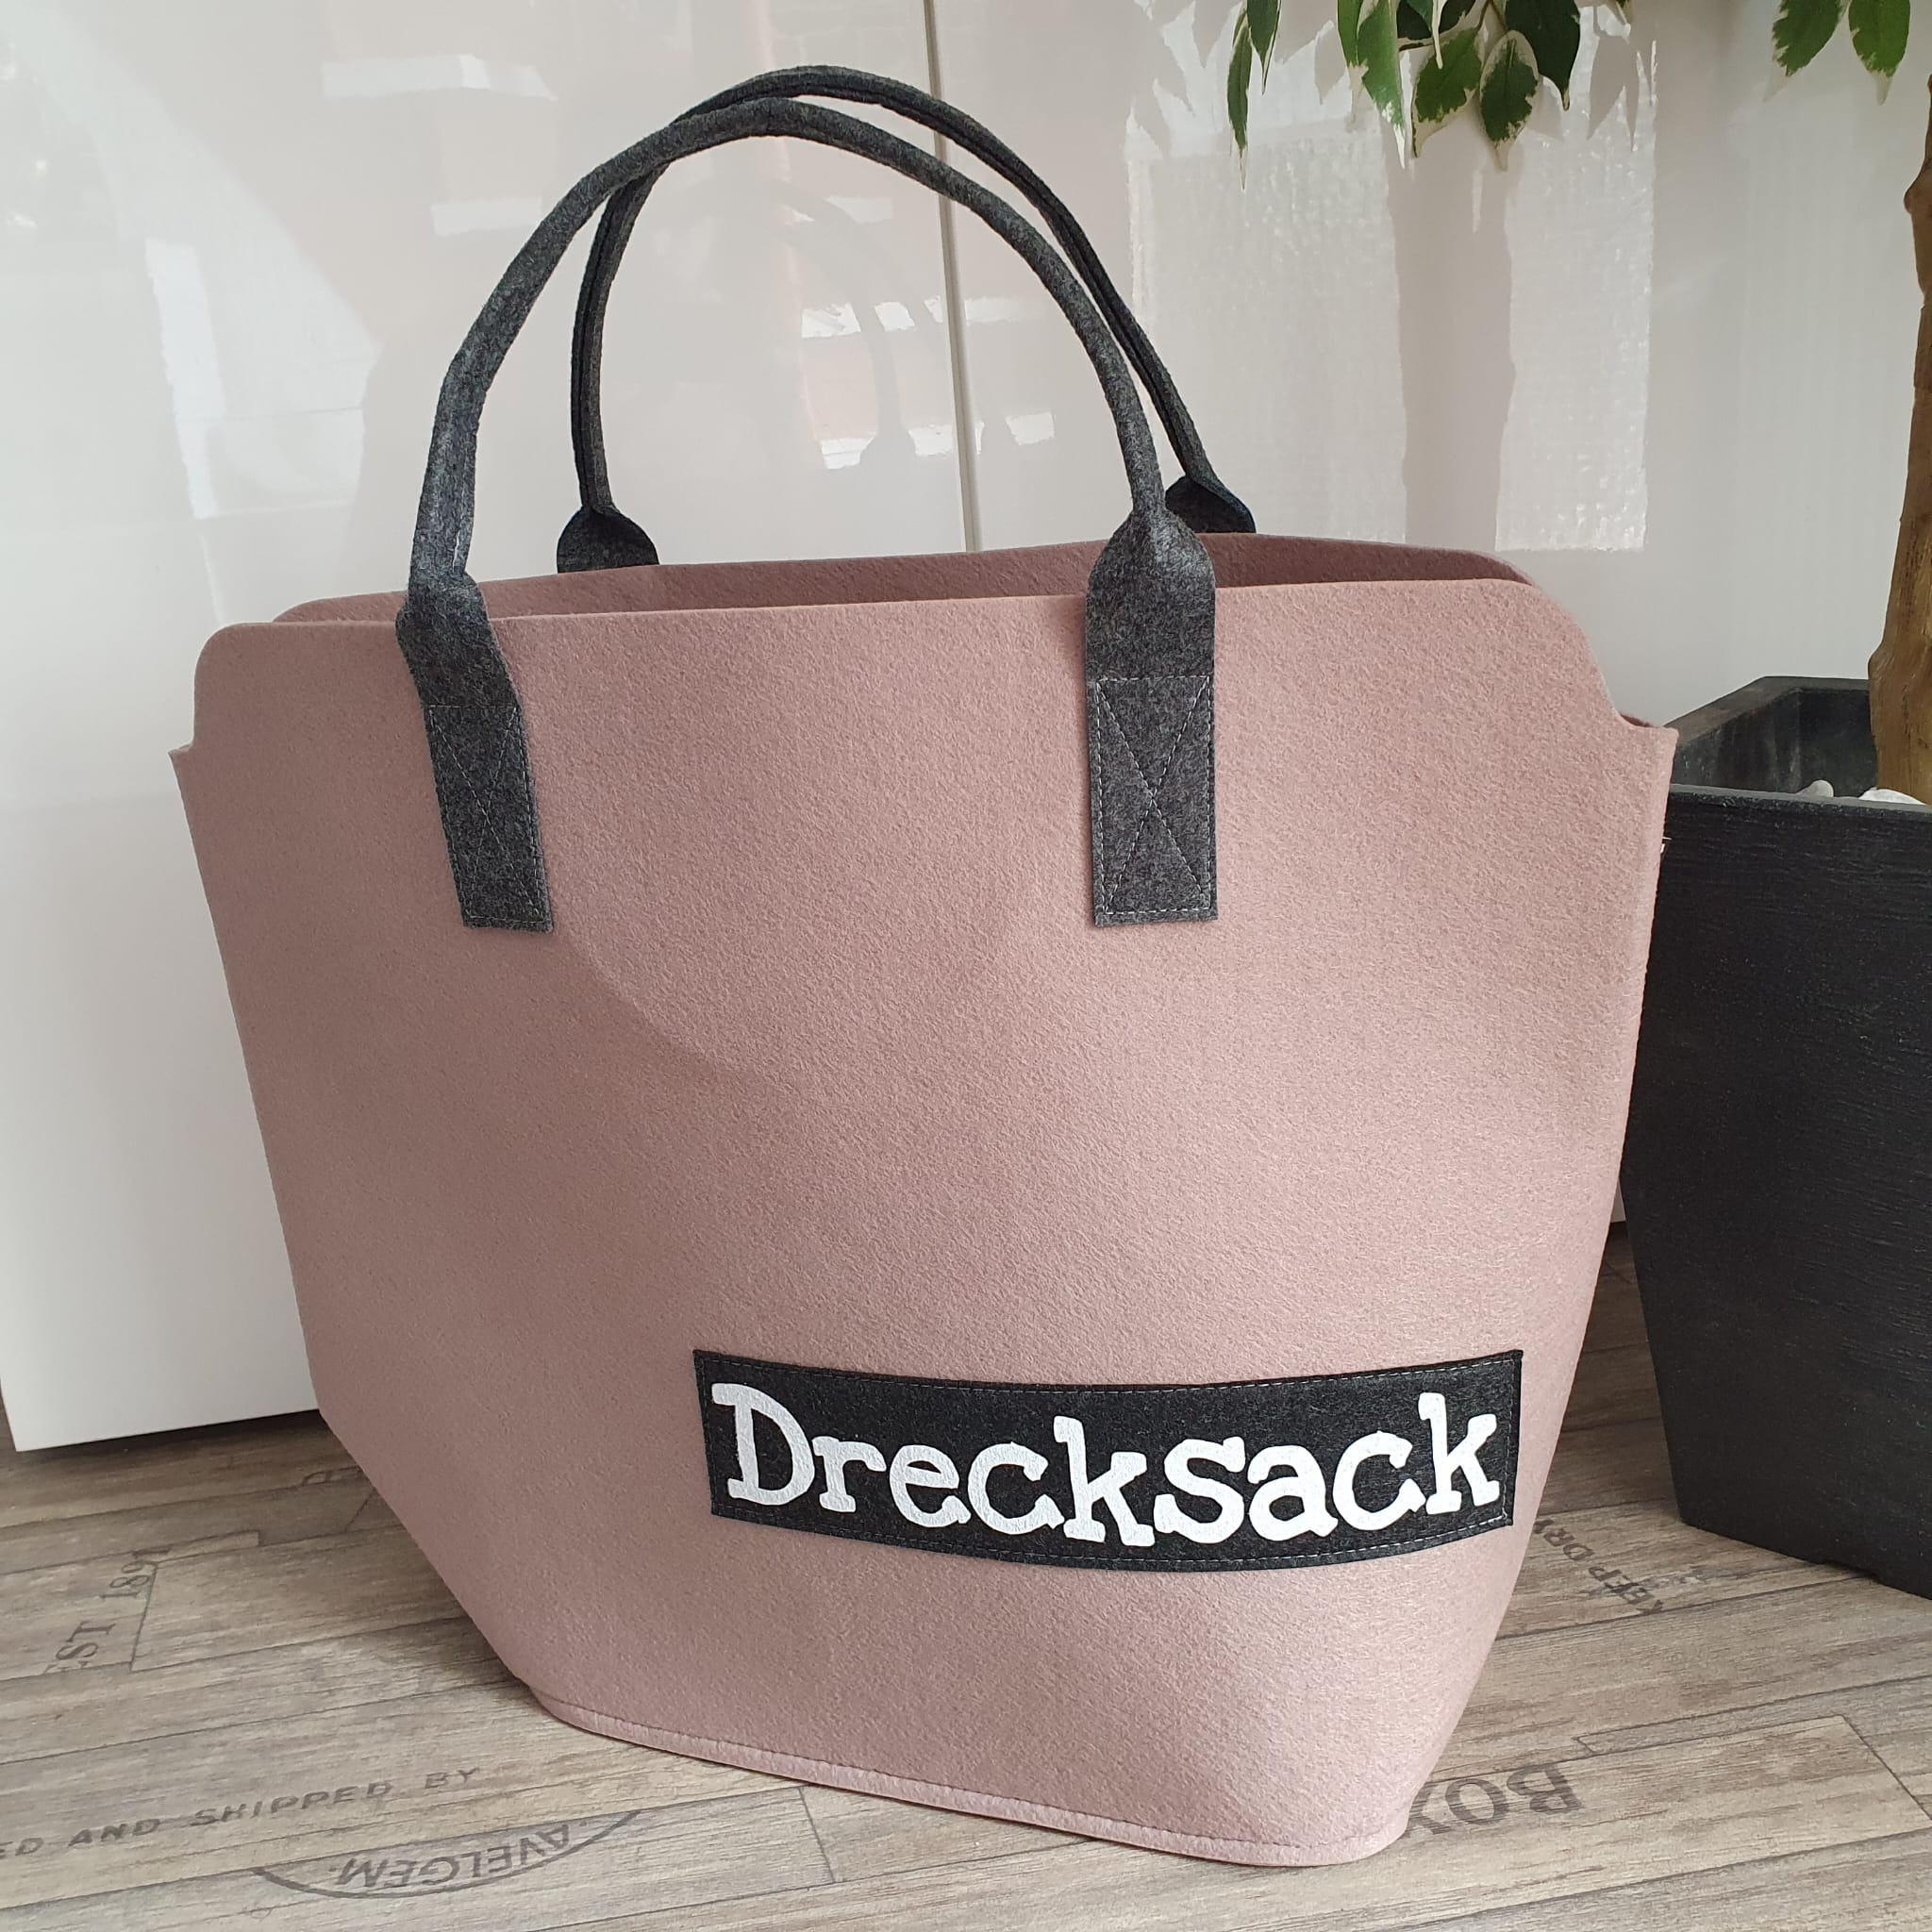 Filz Tasche mit Aufschrift Drecksack 46 cm